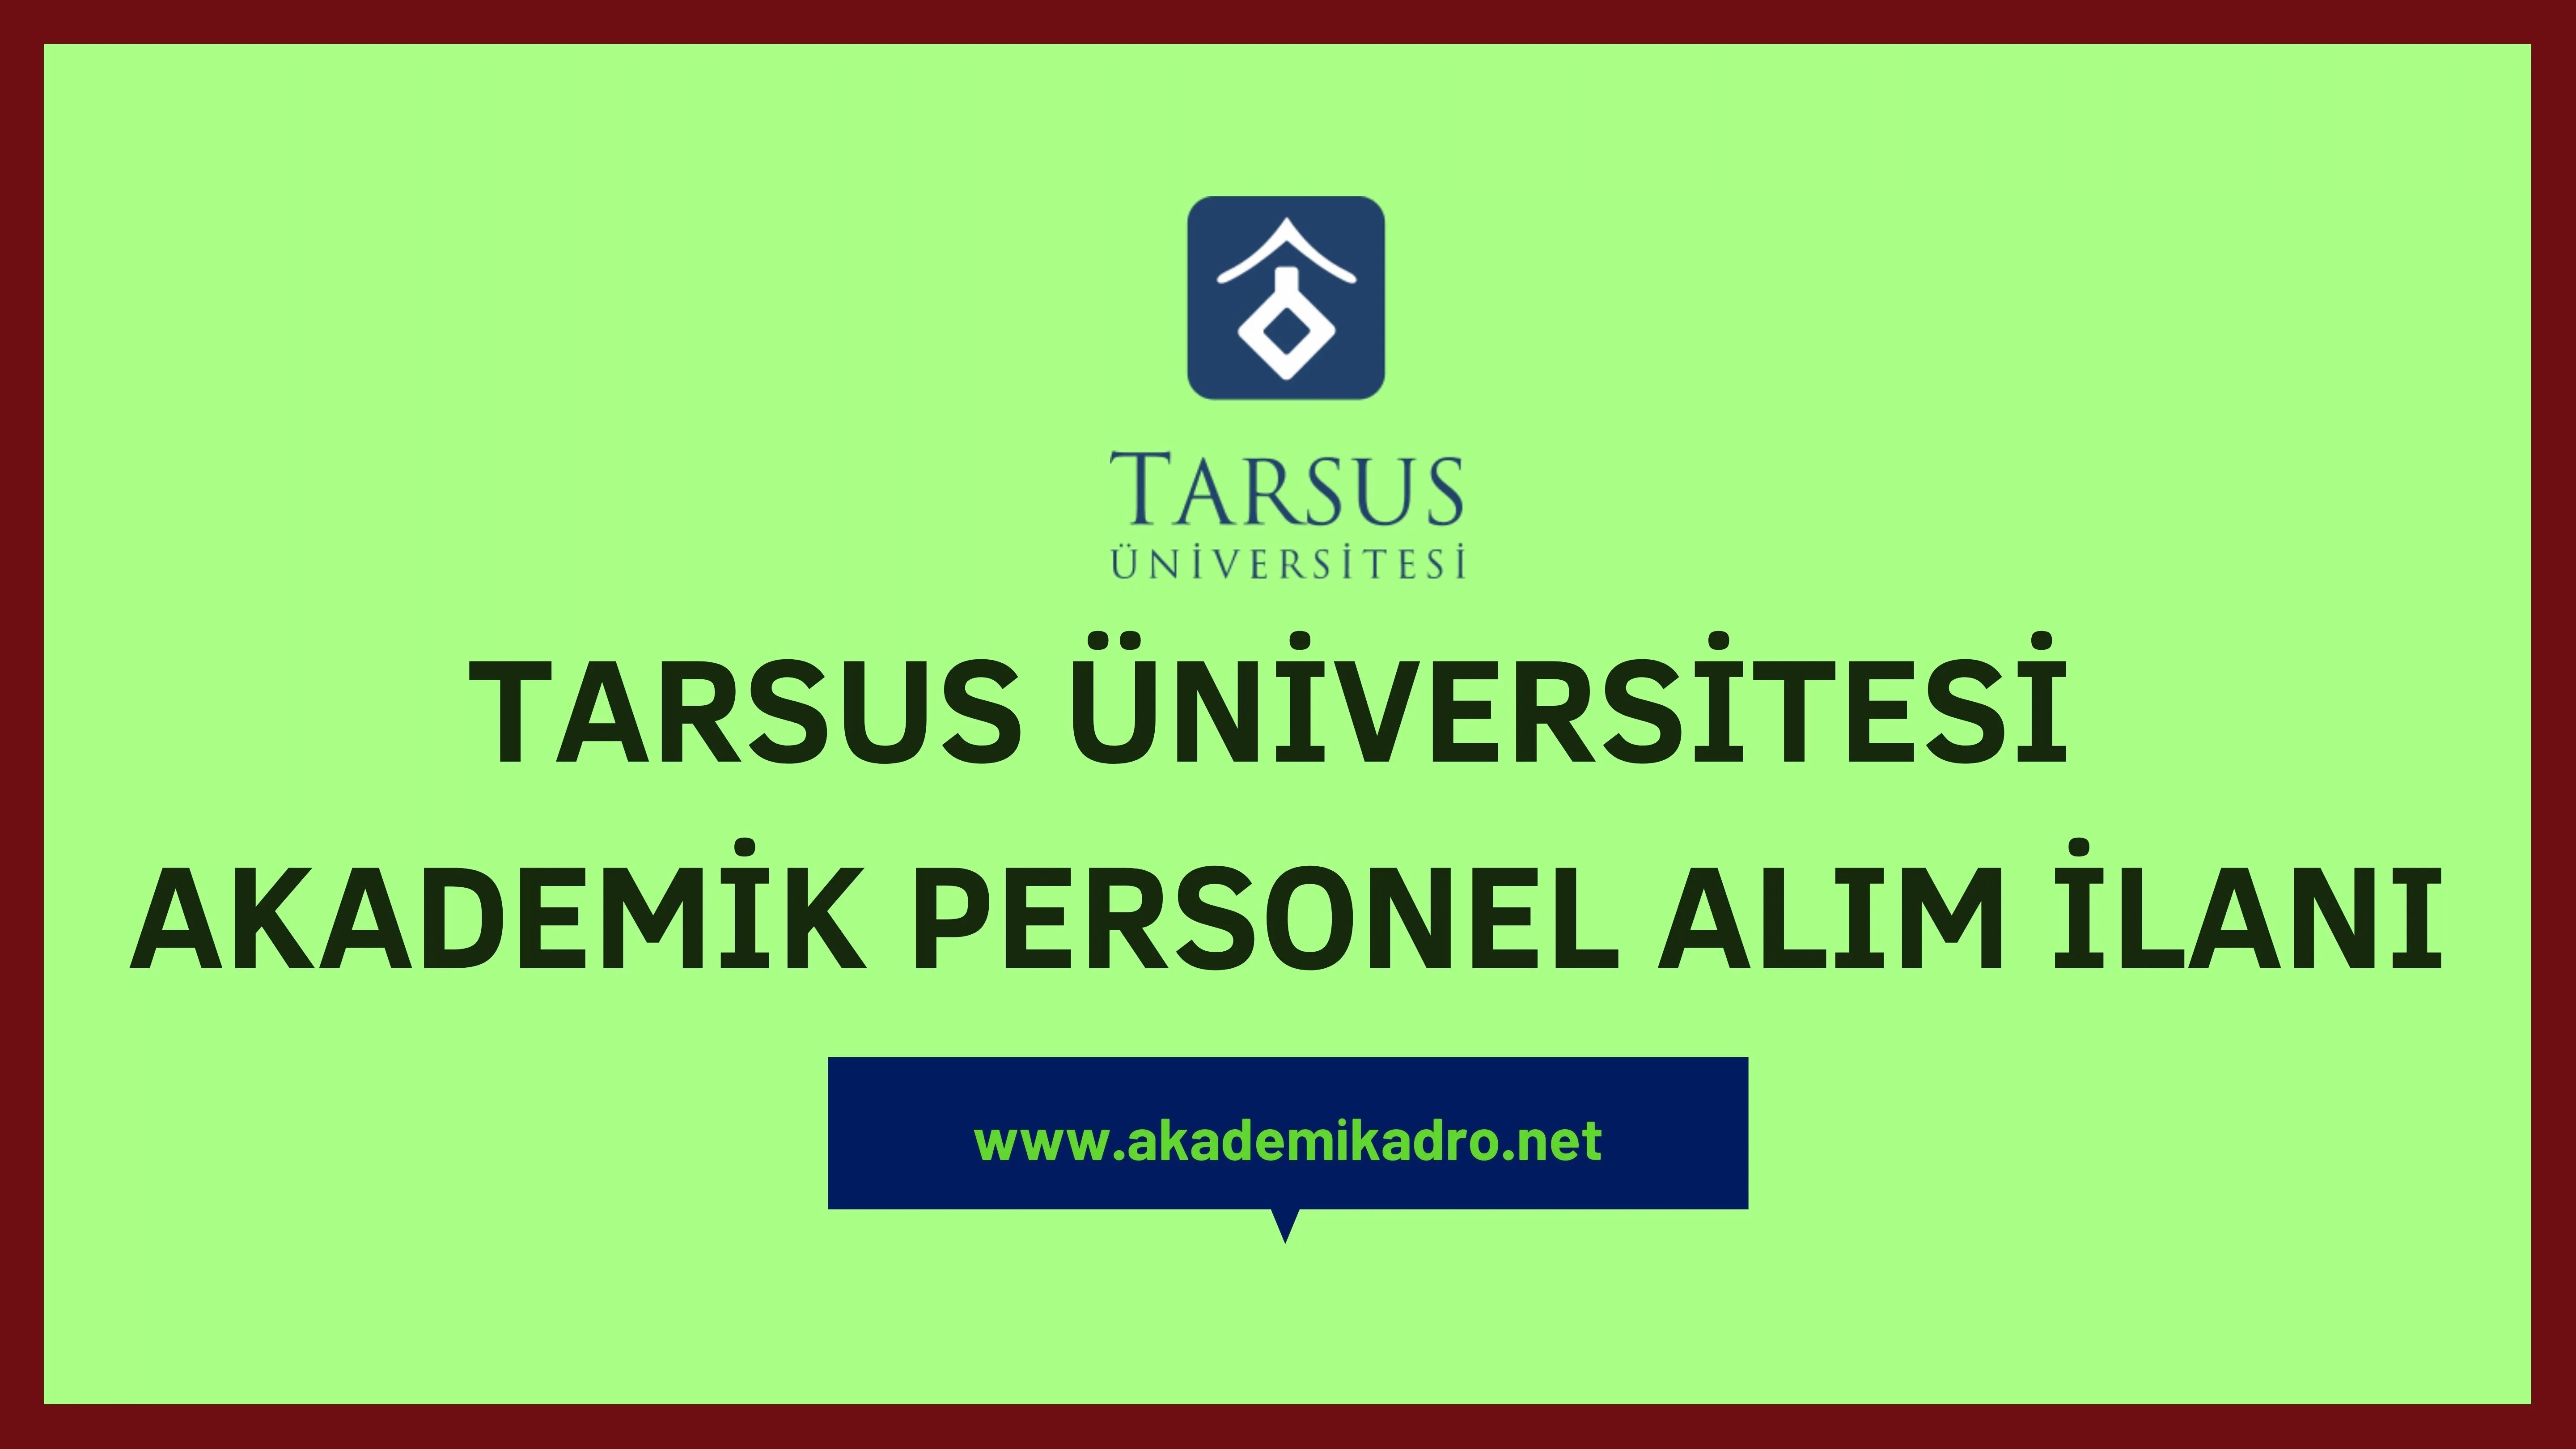 Tarsus Üniversitesi birçok alandan 22 Akademik personel alacak.